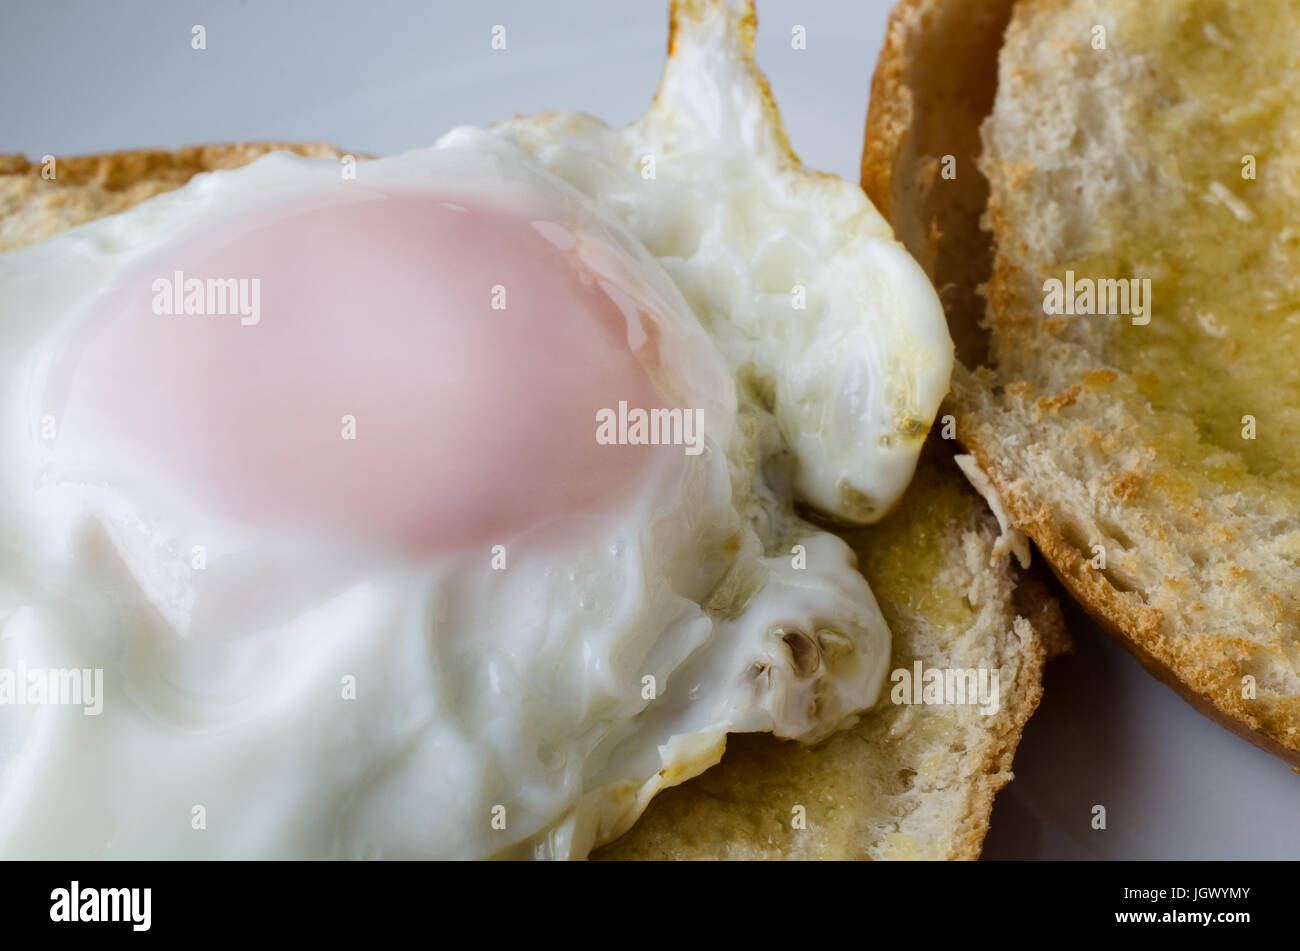 Immagine ravvicinata di intervallo libero uovo fritto su un toast, fette di bagel. Ancora integro e pronto da mangiare. Foto Stock